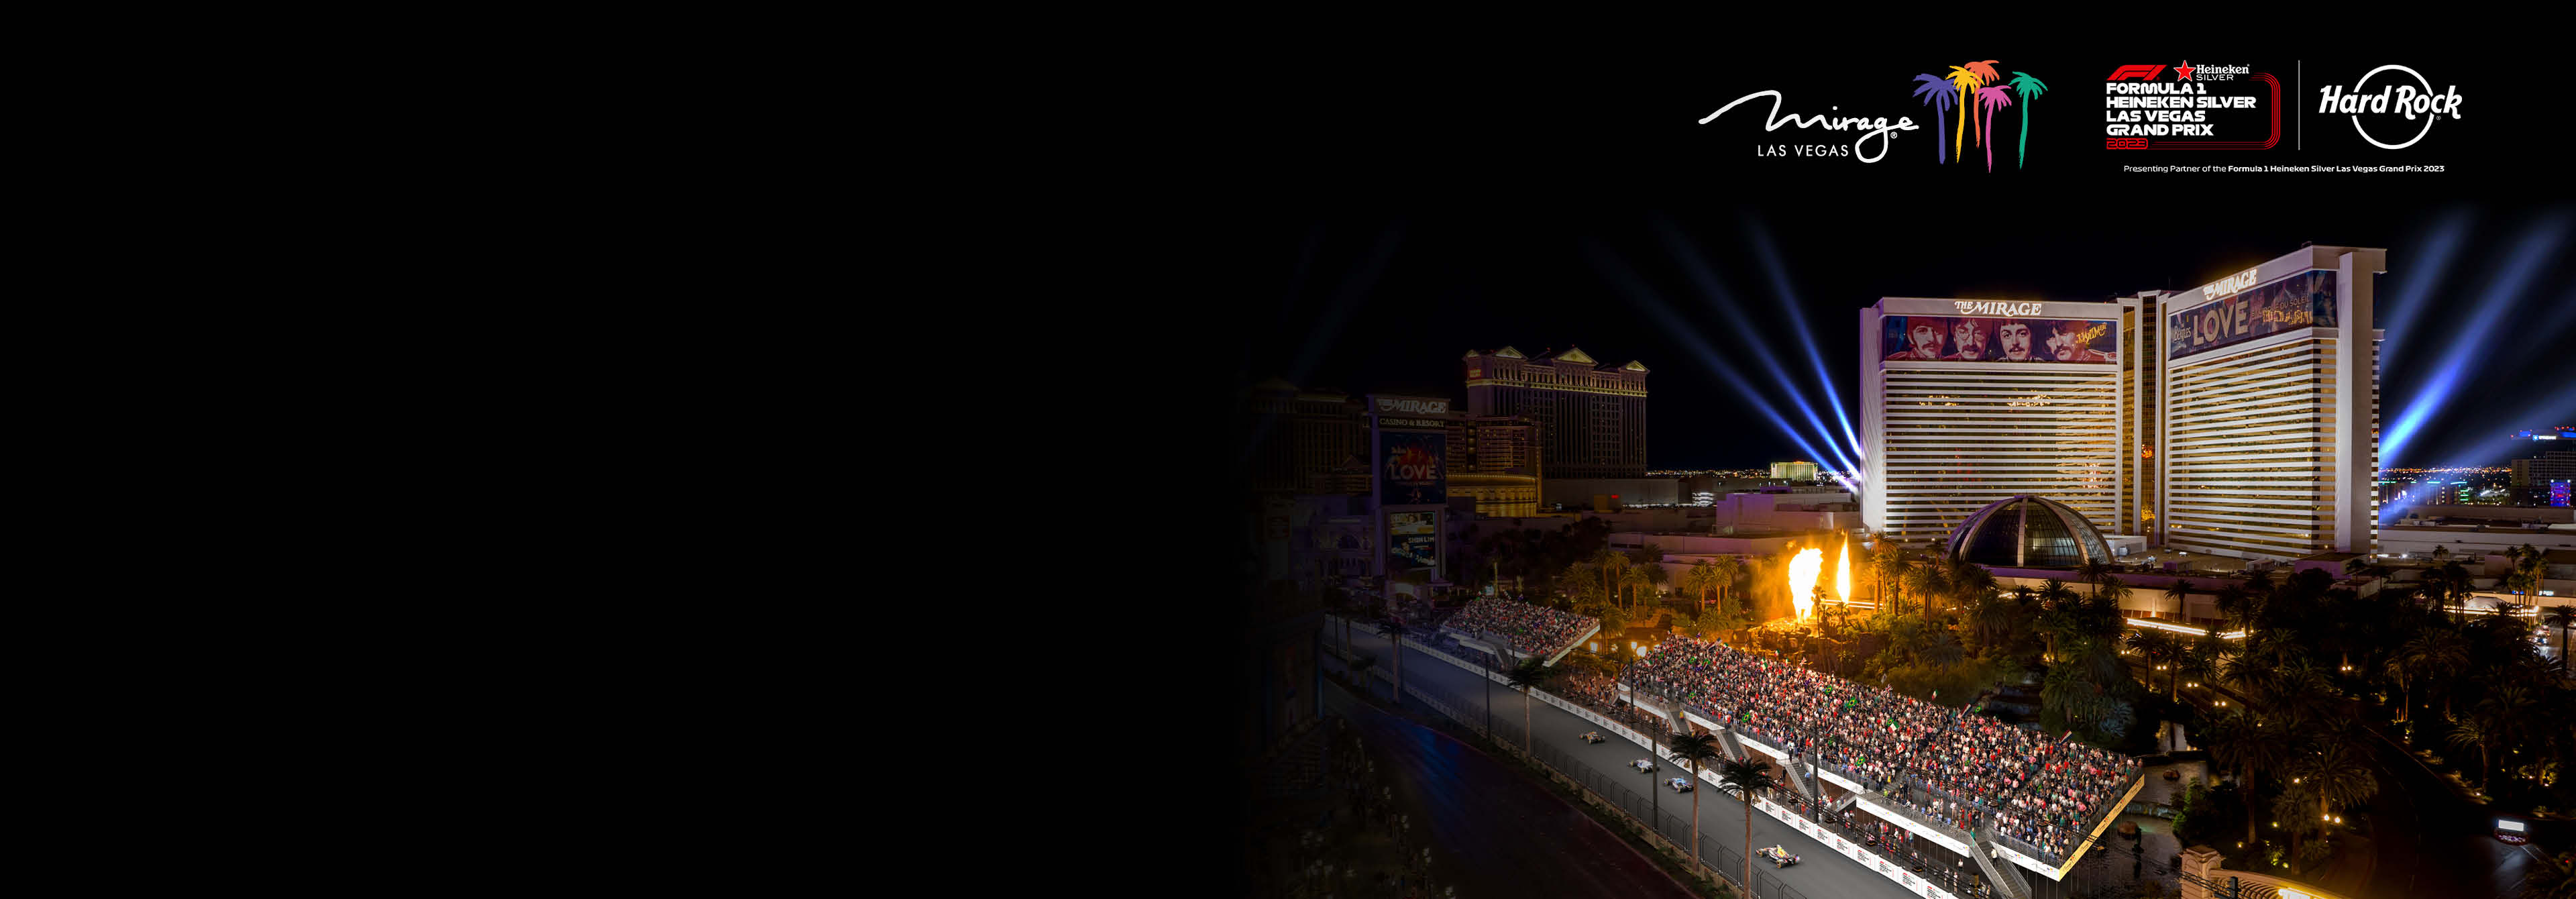 California Hotel and Casino,Las Vegas 2023